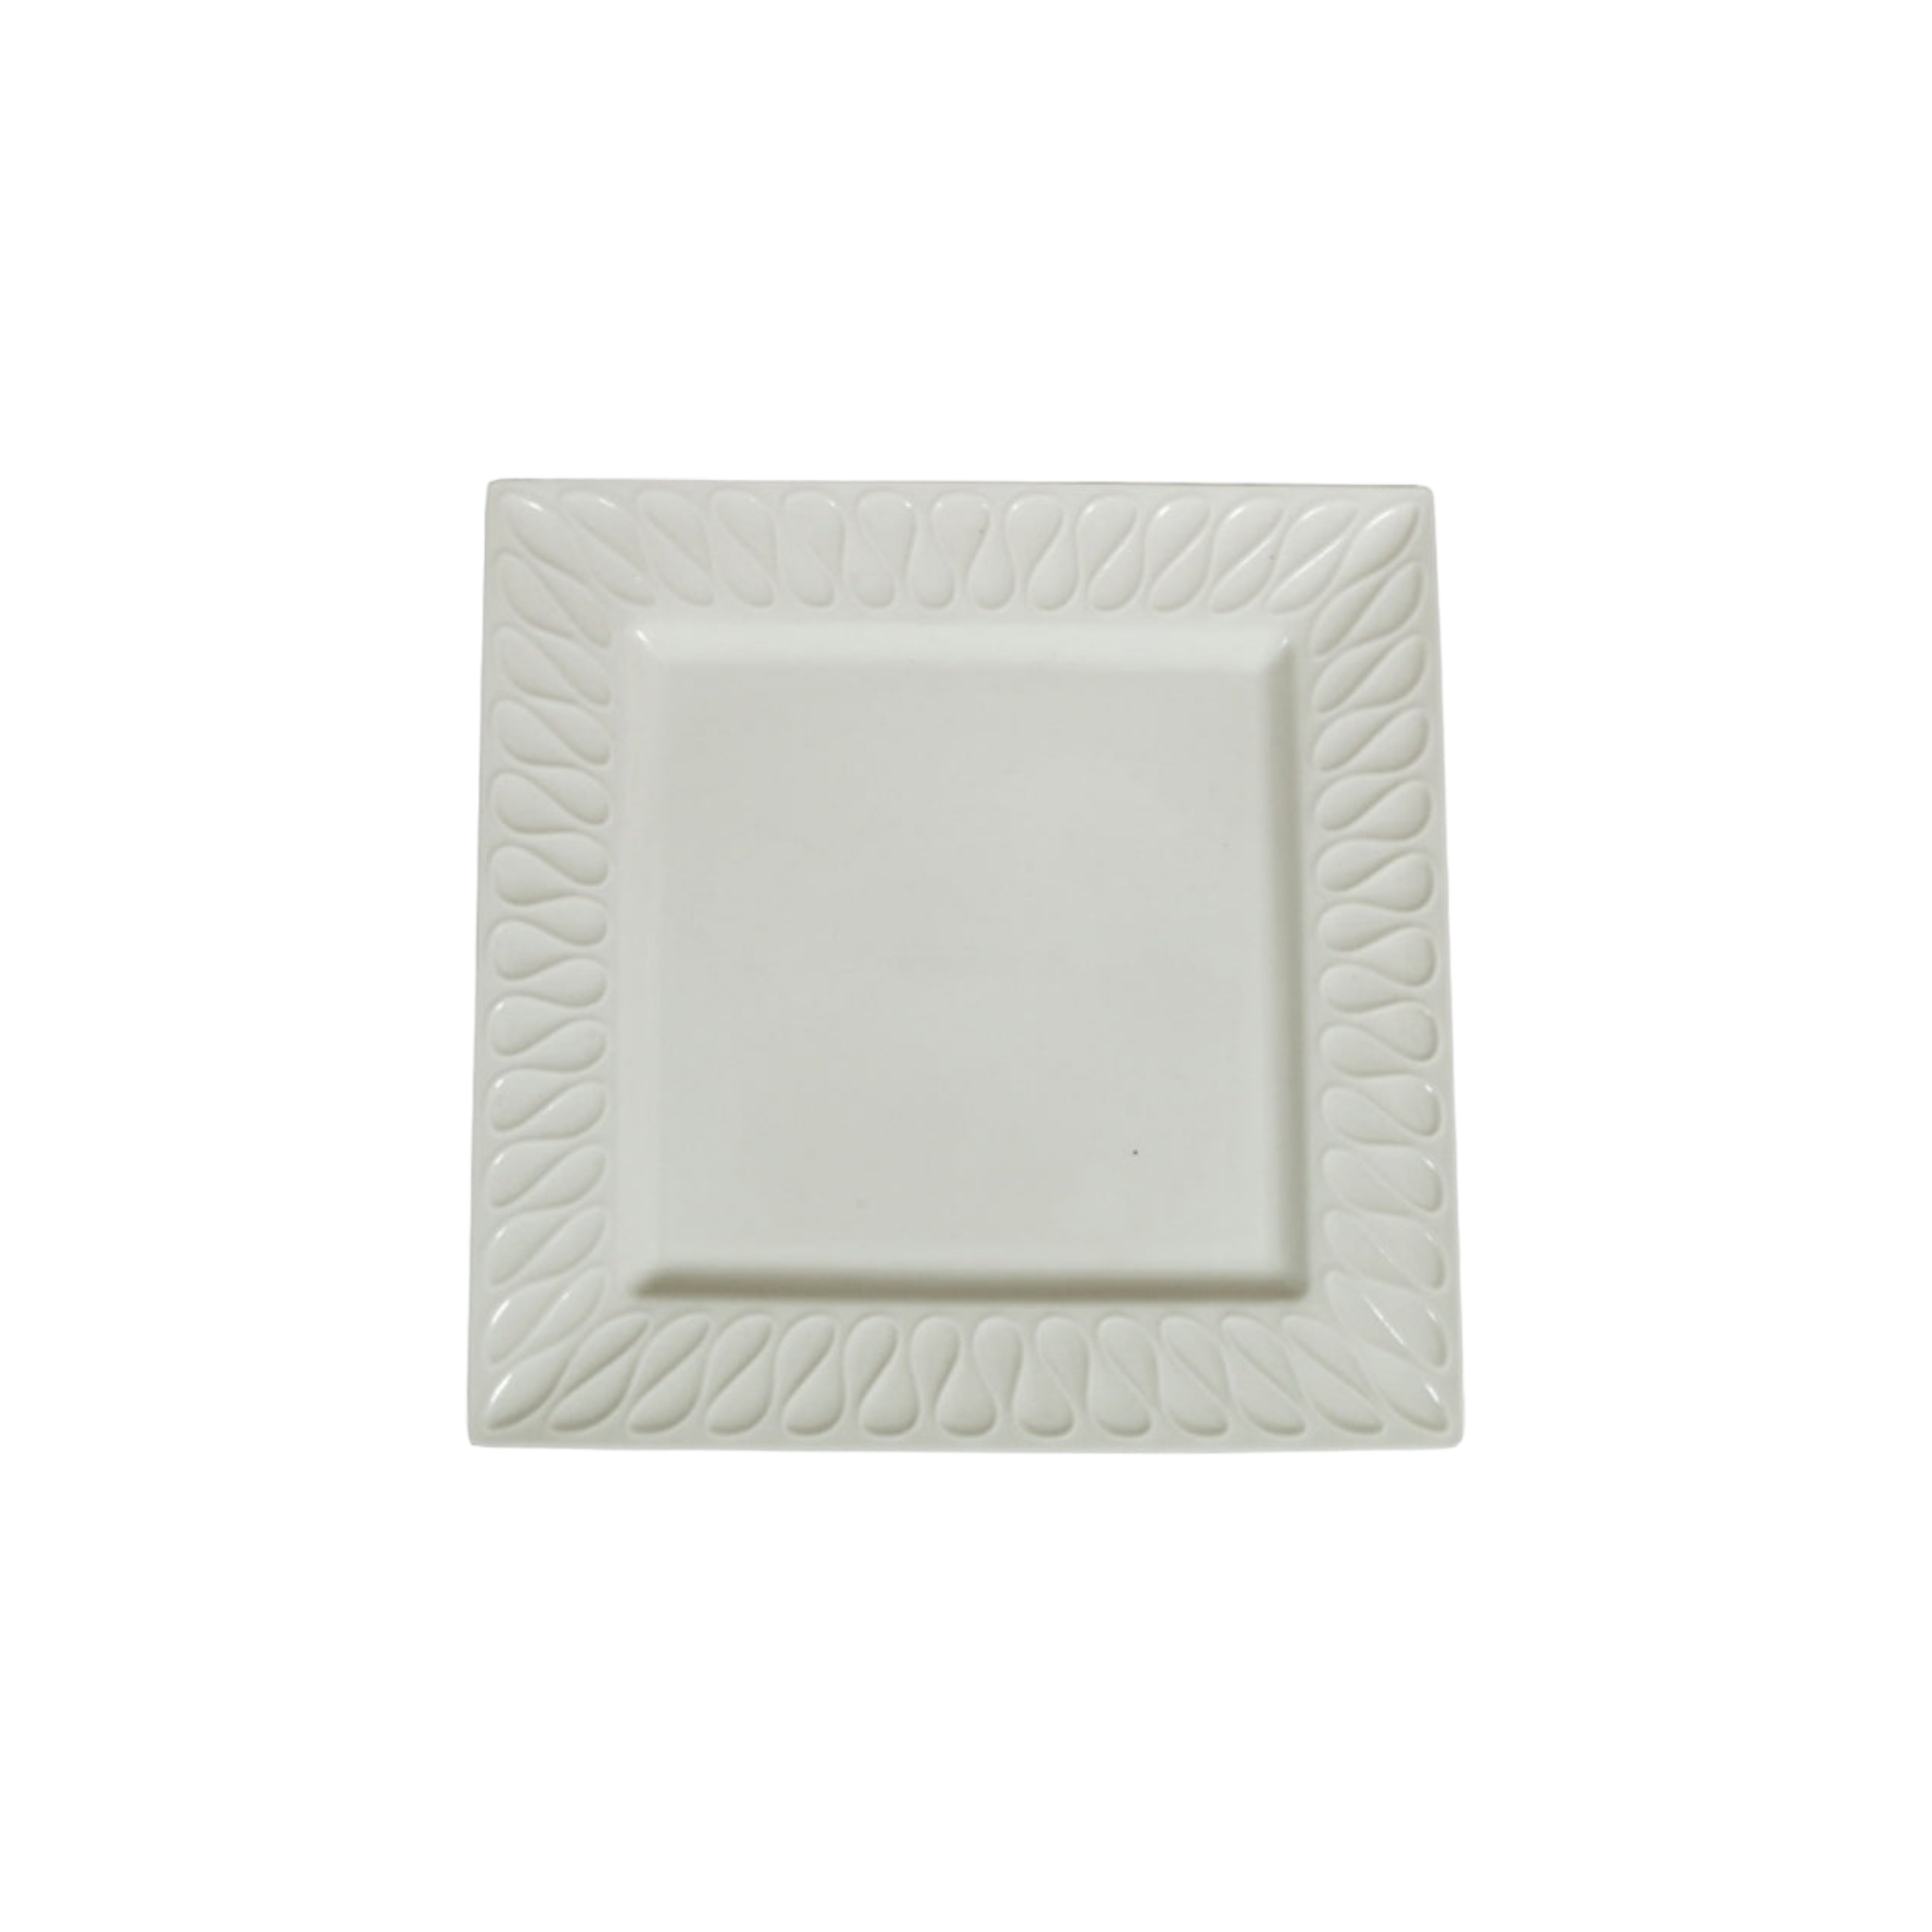 Ceramic Serving Platter Square 25x25x2cm 32842